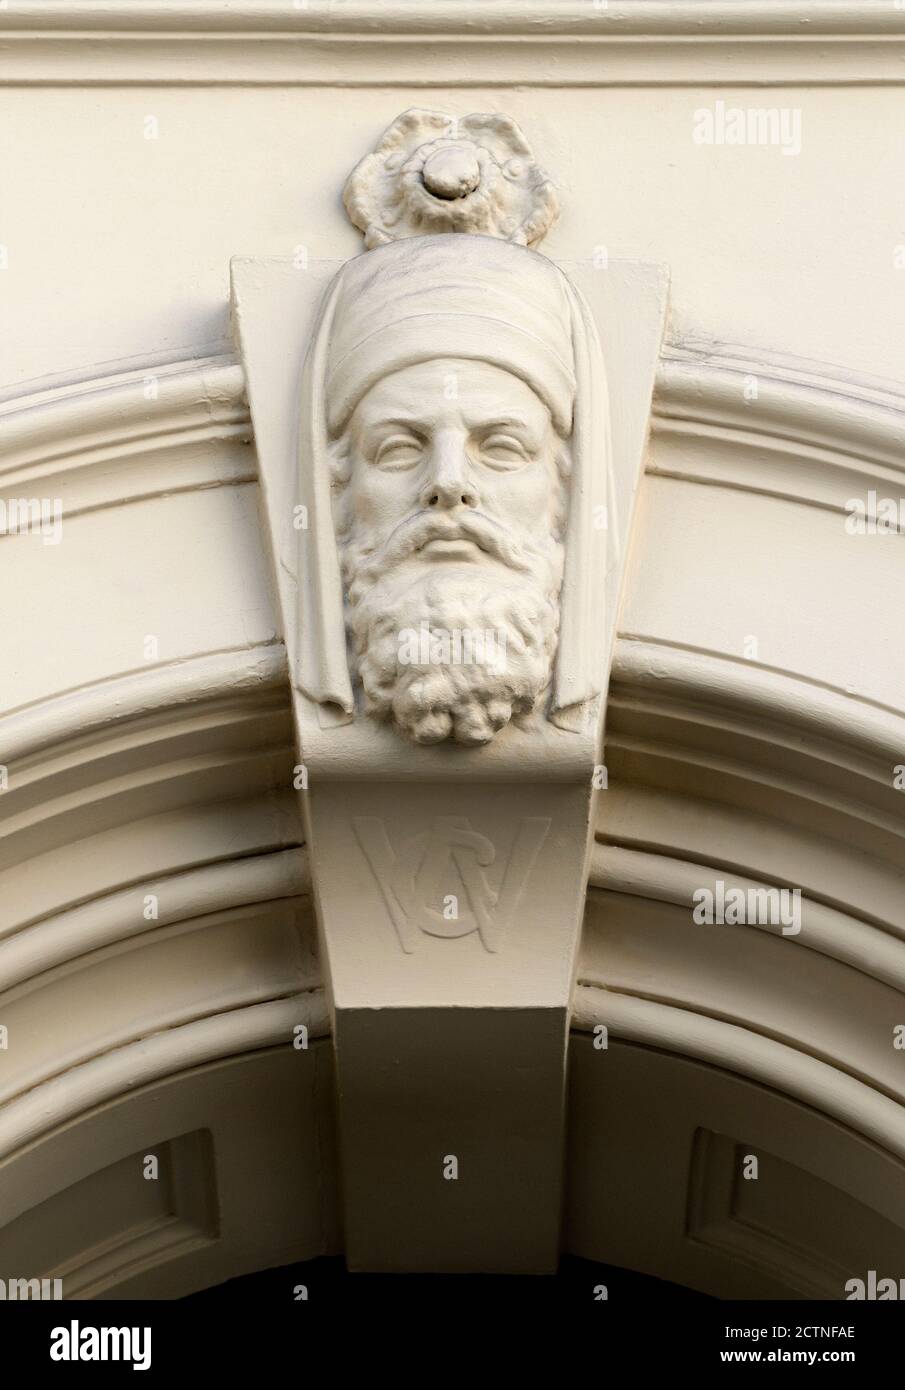 Londres, Angleterre, Royaume-Uni. Keystone sculpté avec un visage humain au 115 Chancery Lane, maintenant le restaurant Cigalon. Banque D'Images